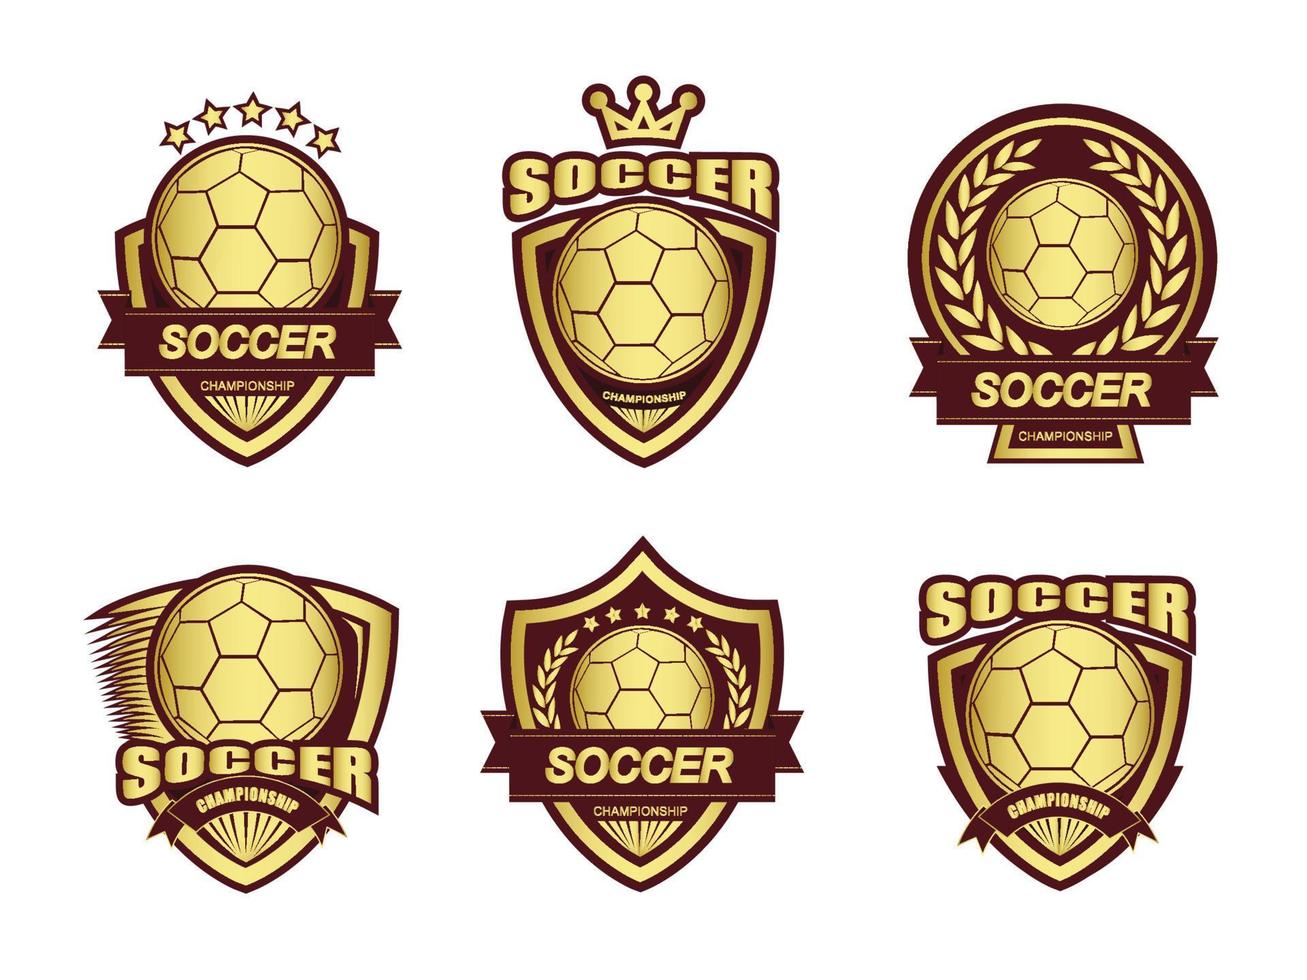 Group of golden soccer logo set.It's Winner concept vector